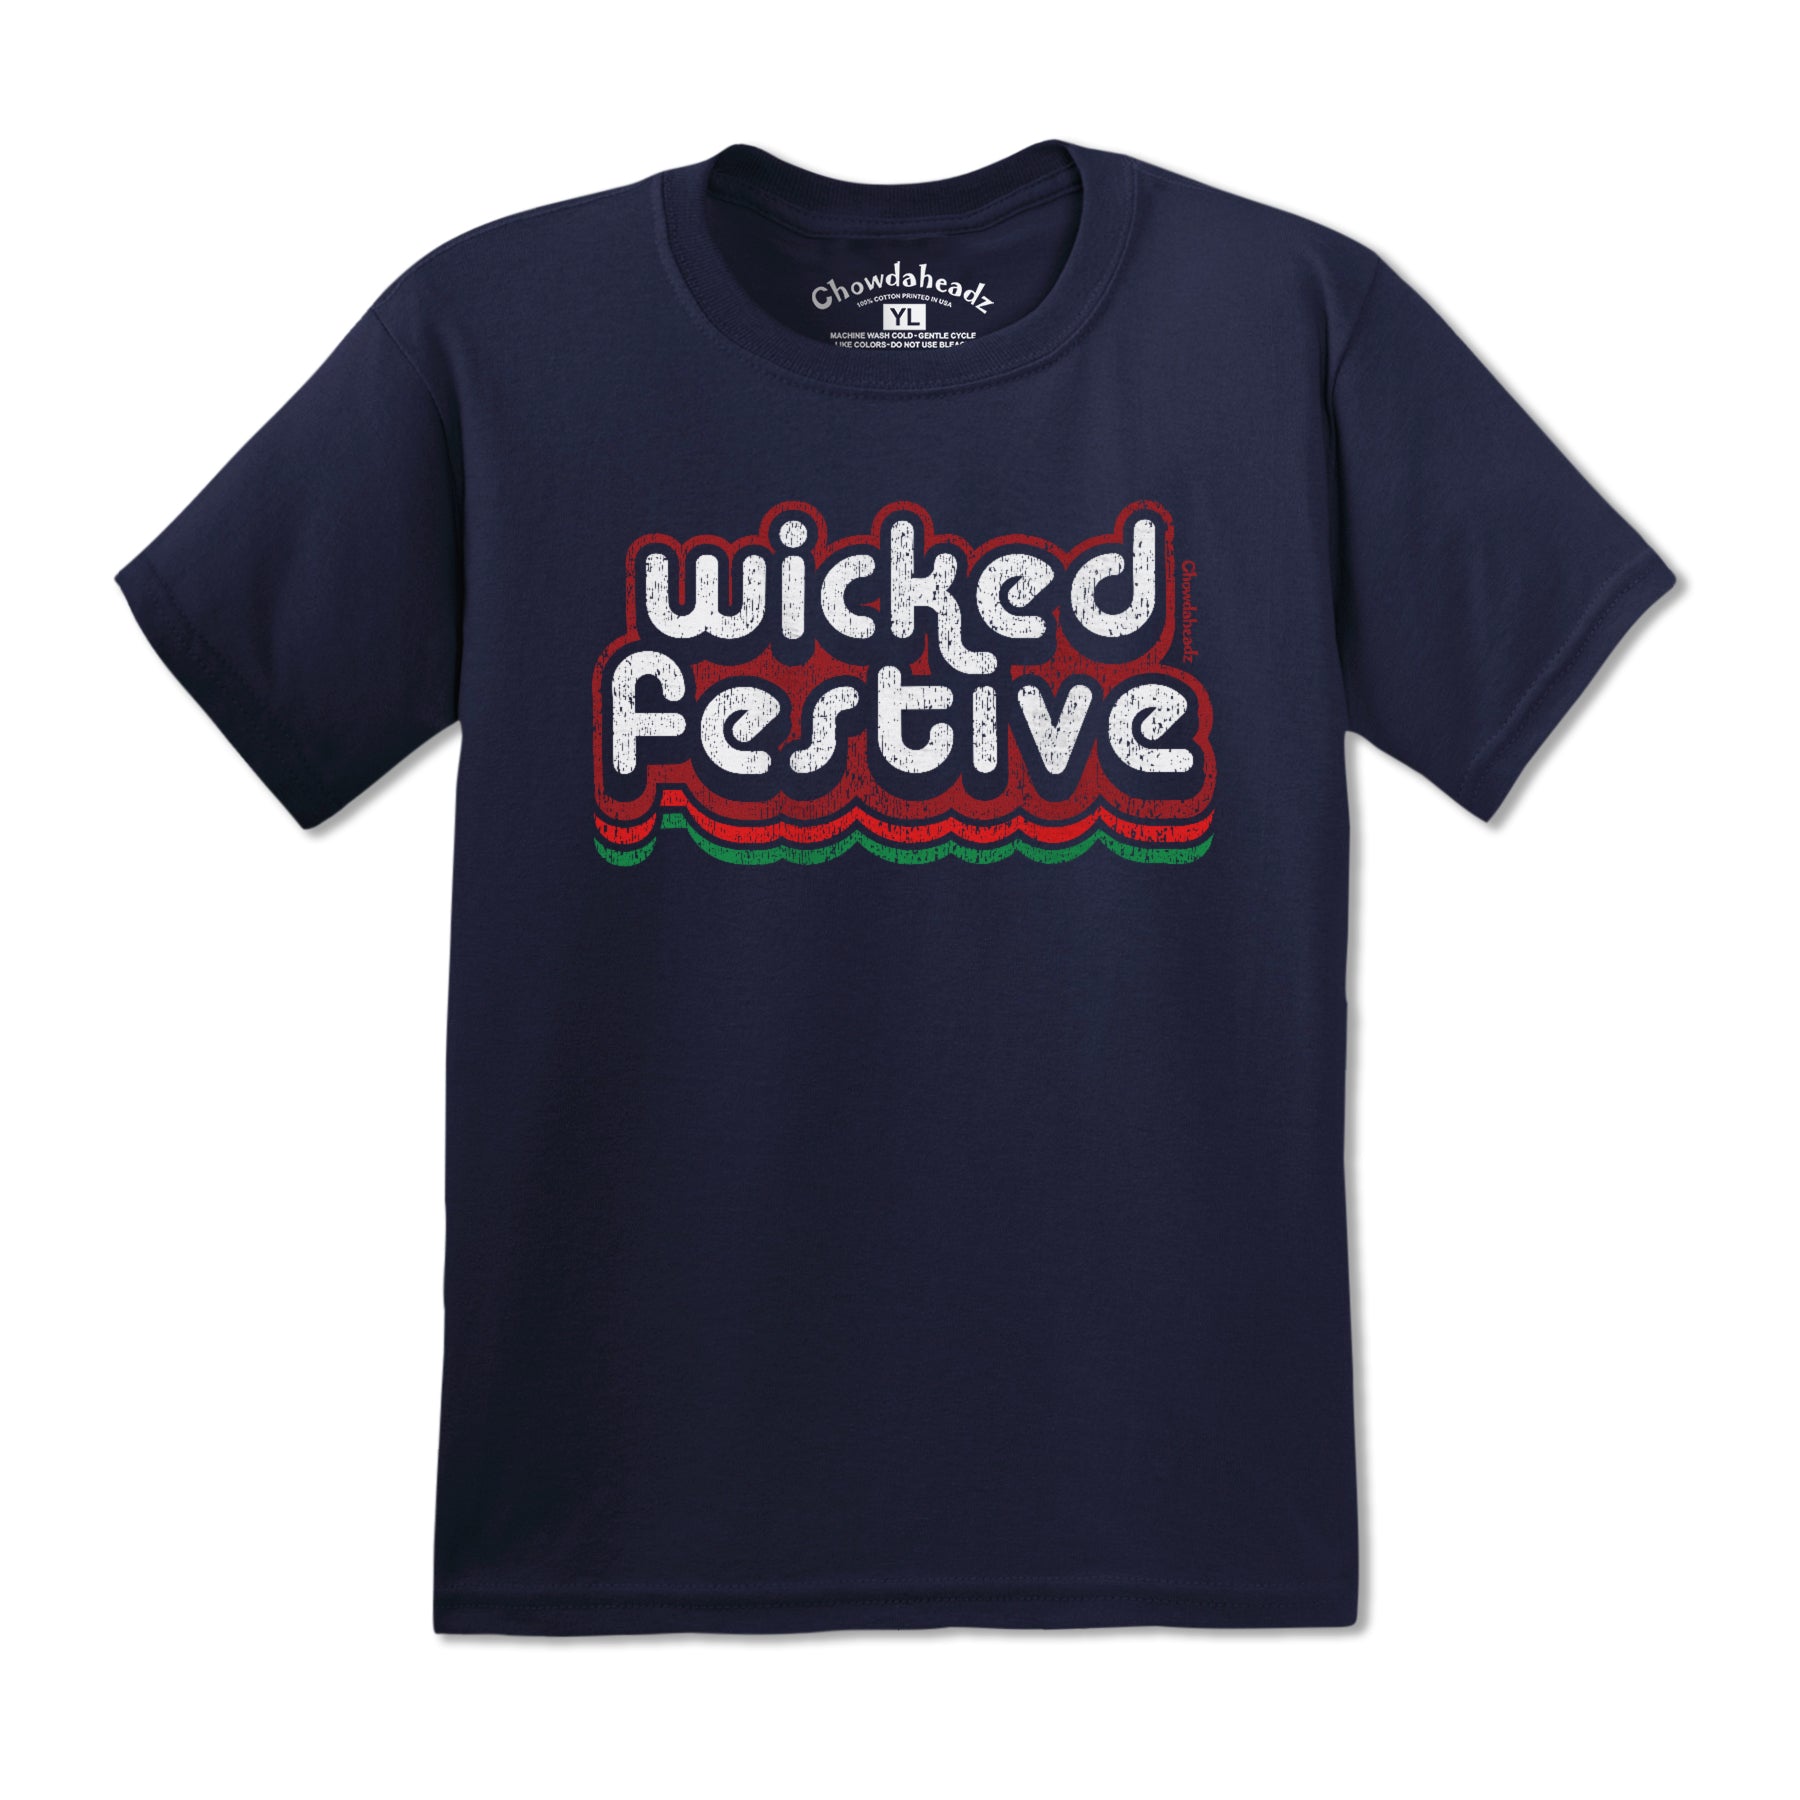 Wicked Festive Retro Youth T-Shirt - Chowdaheadz